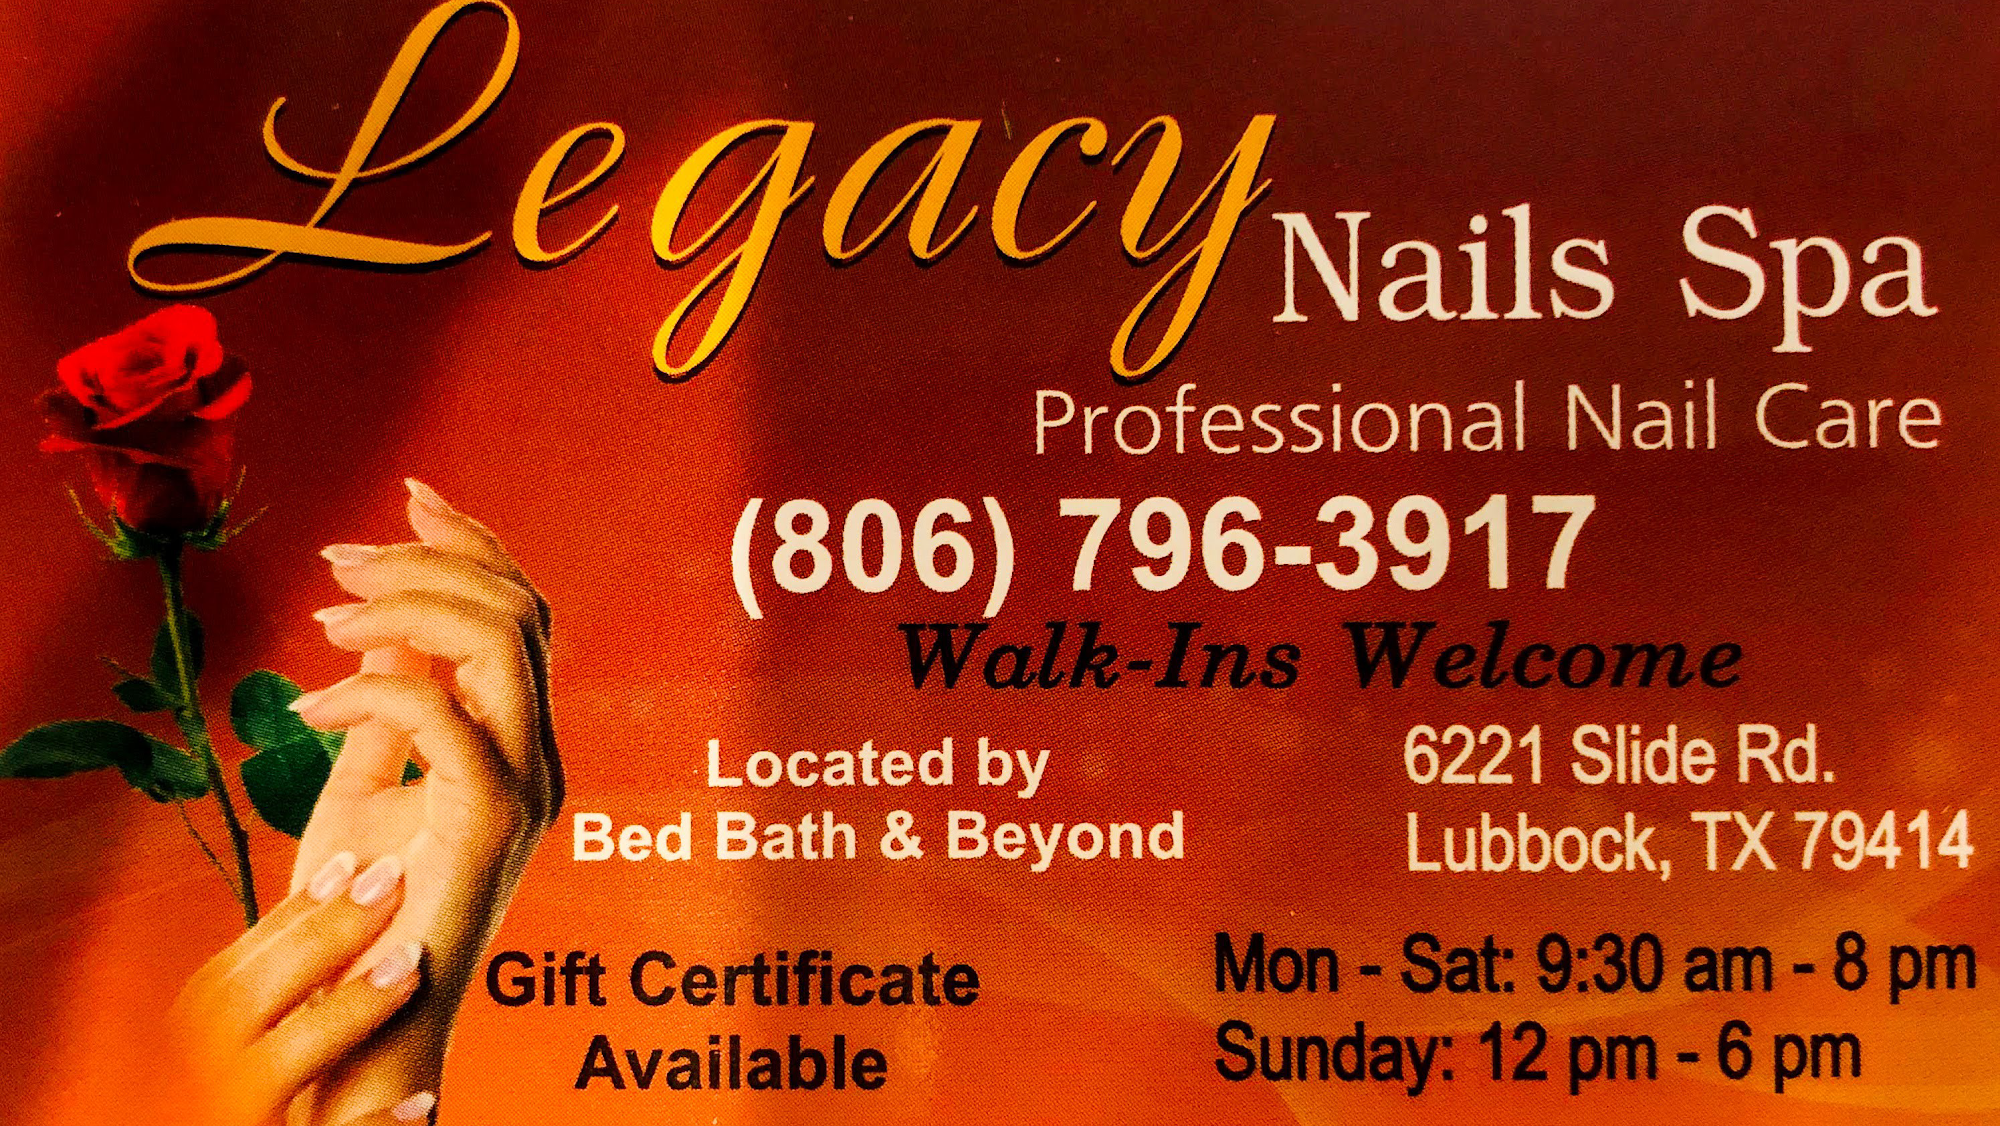 Legacy Nails Spa